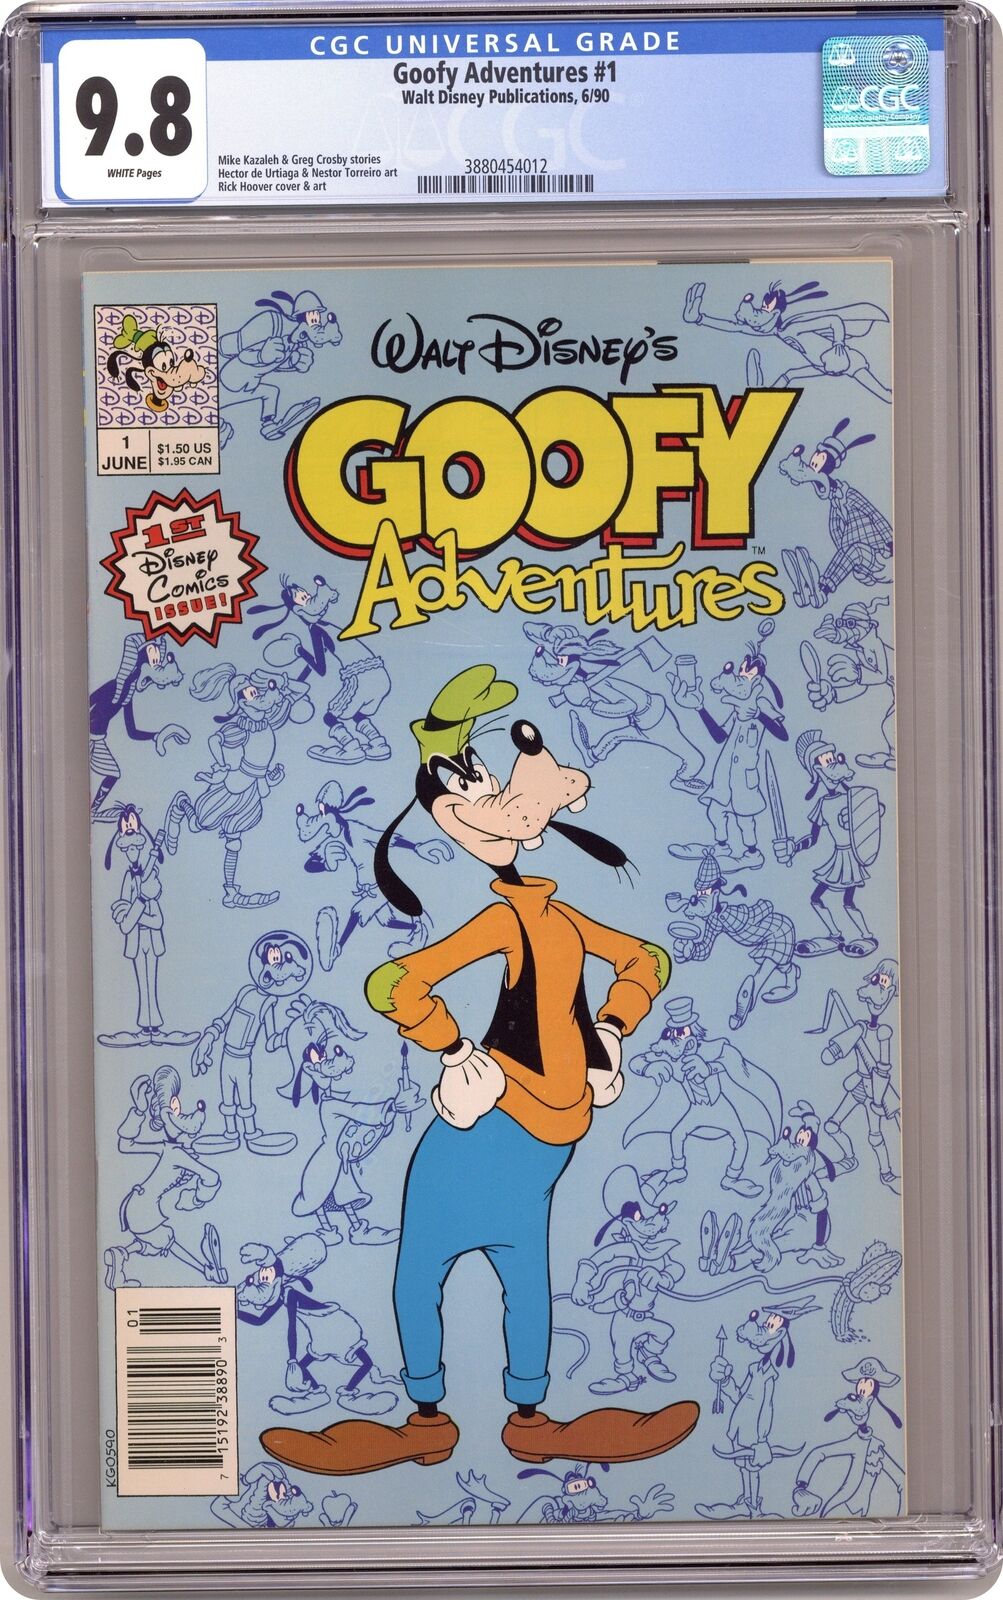 Goofy Adventures 1N CGC 9.8 1990 3880454012